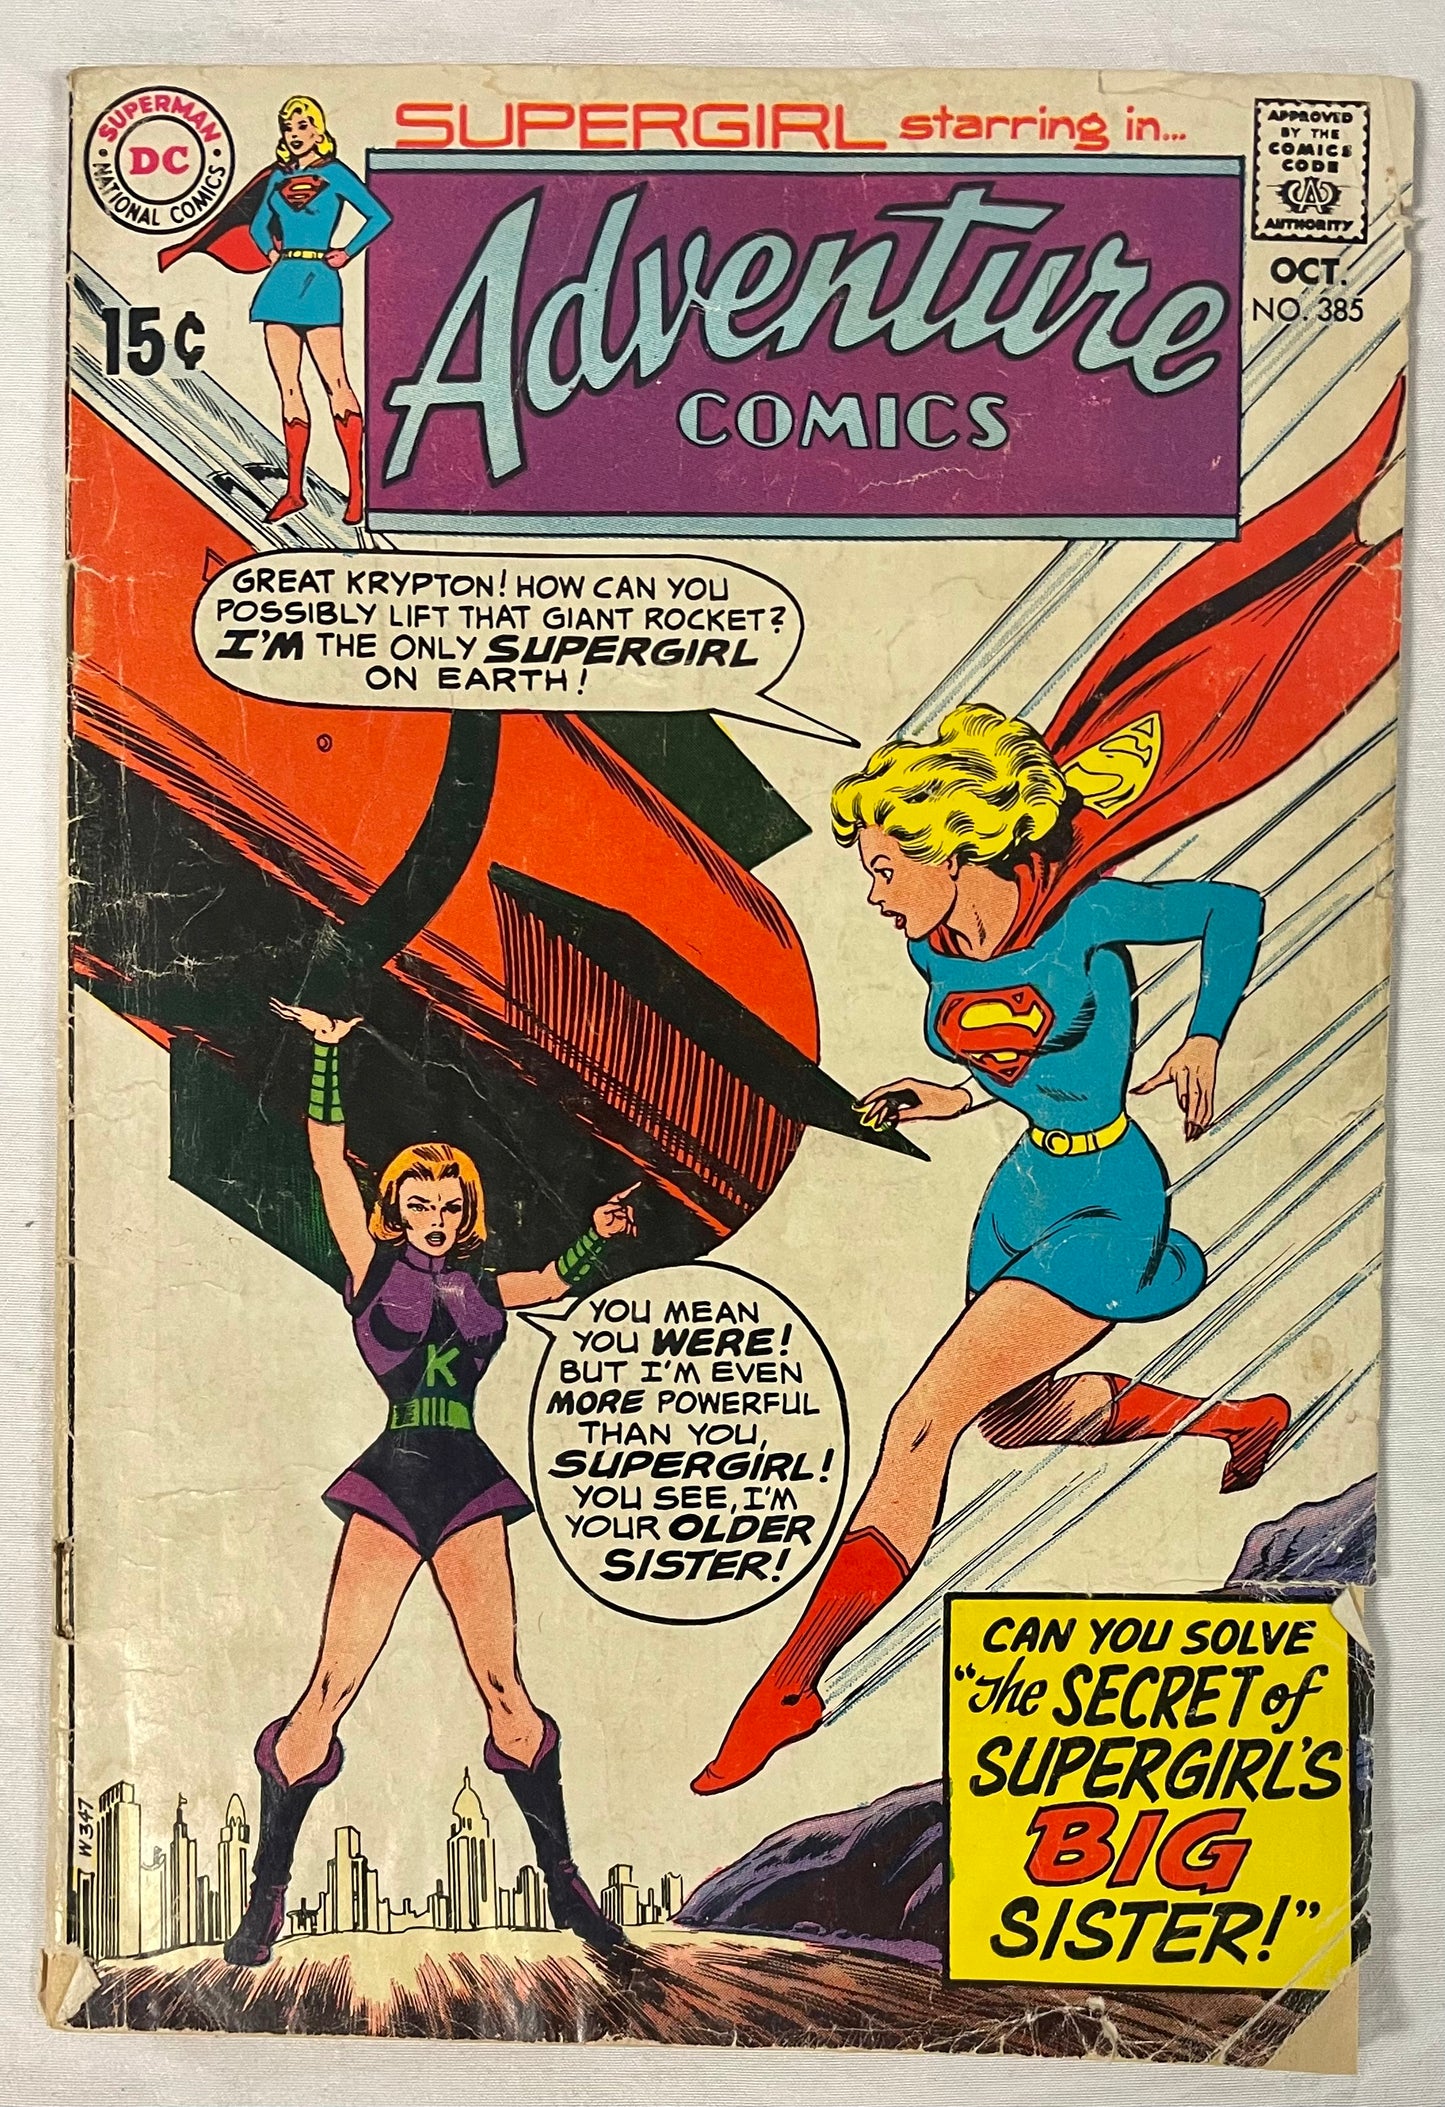 DC Comics Adventure Comics No. 385